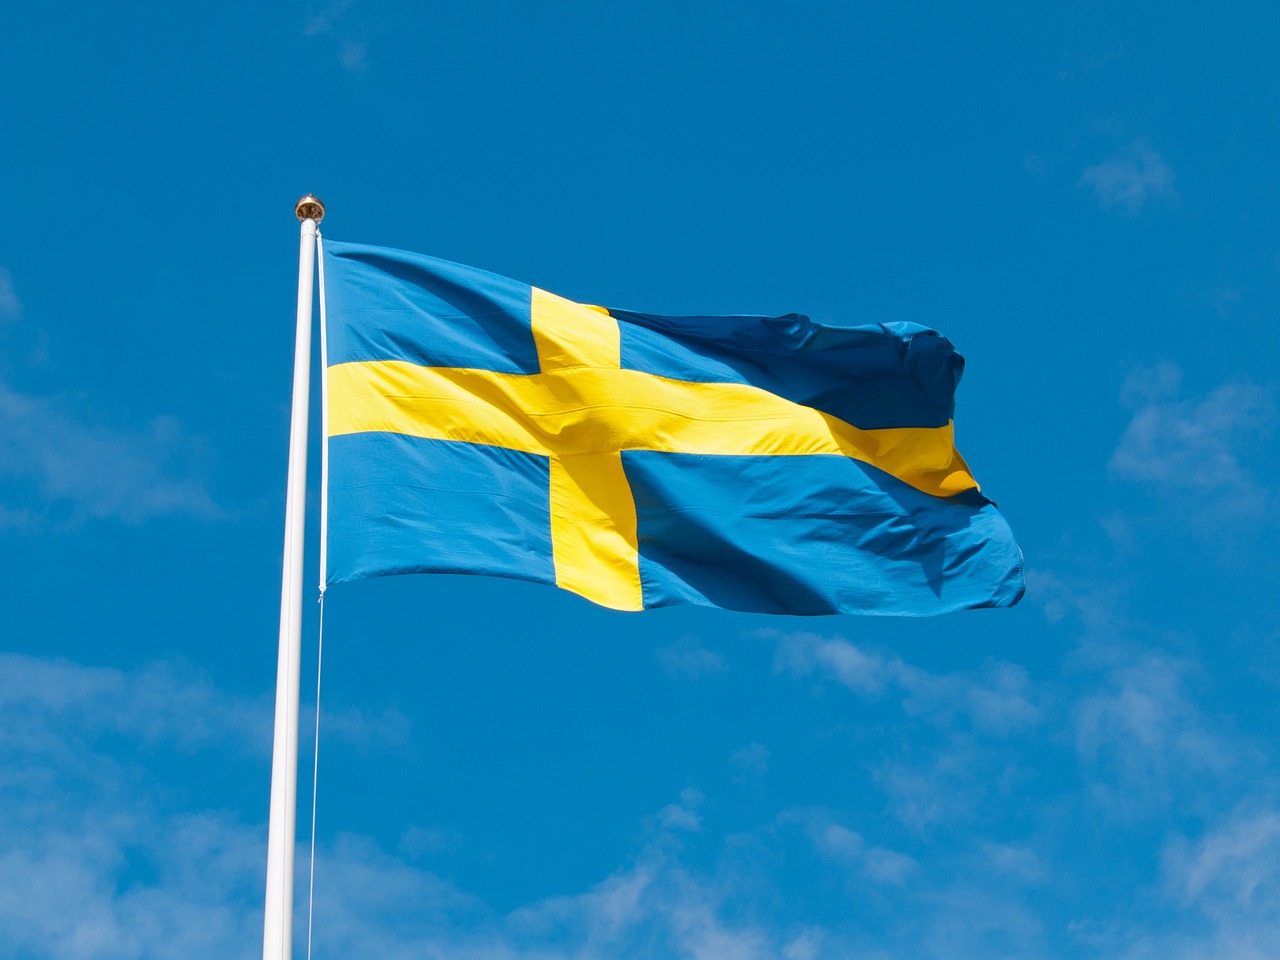 Bandera de Suecia. Fuente: Pixabay.